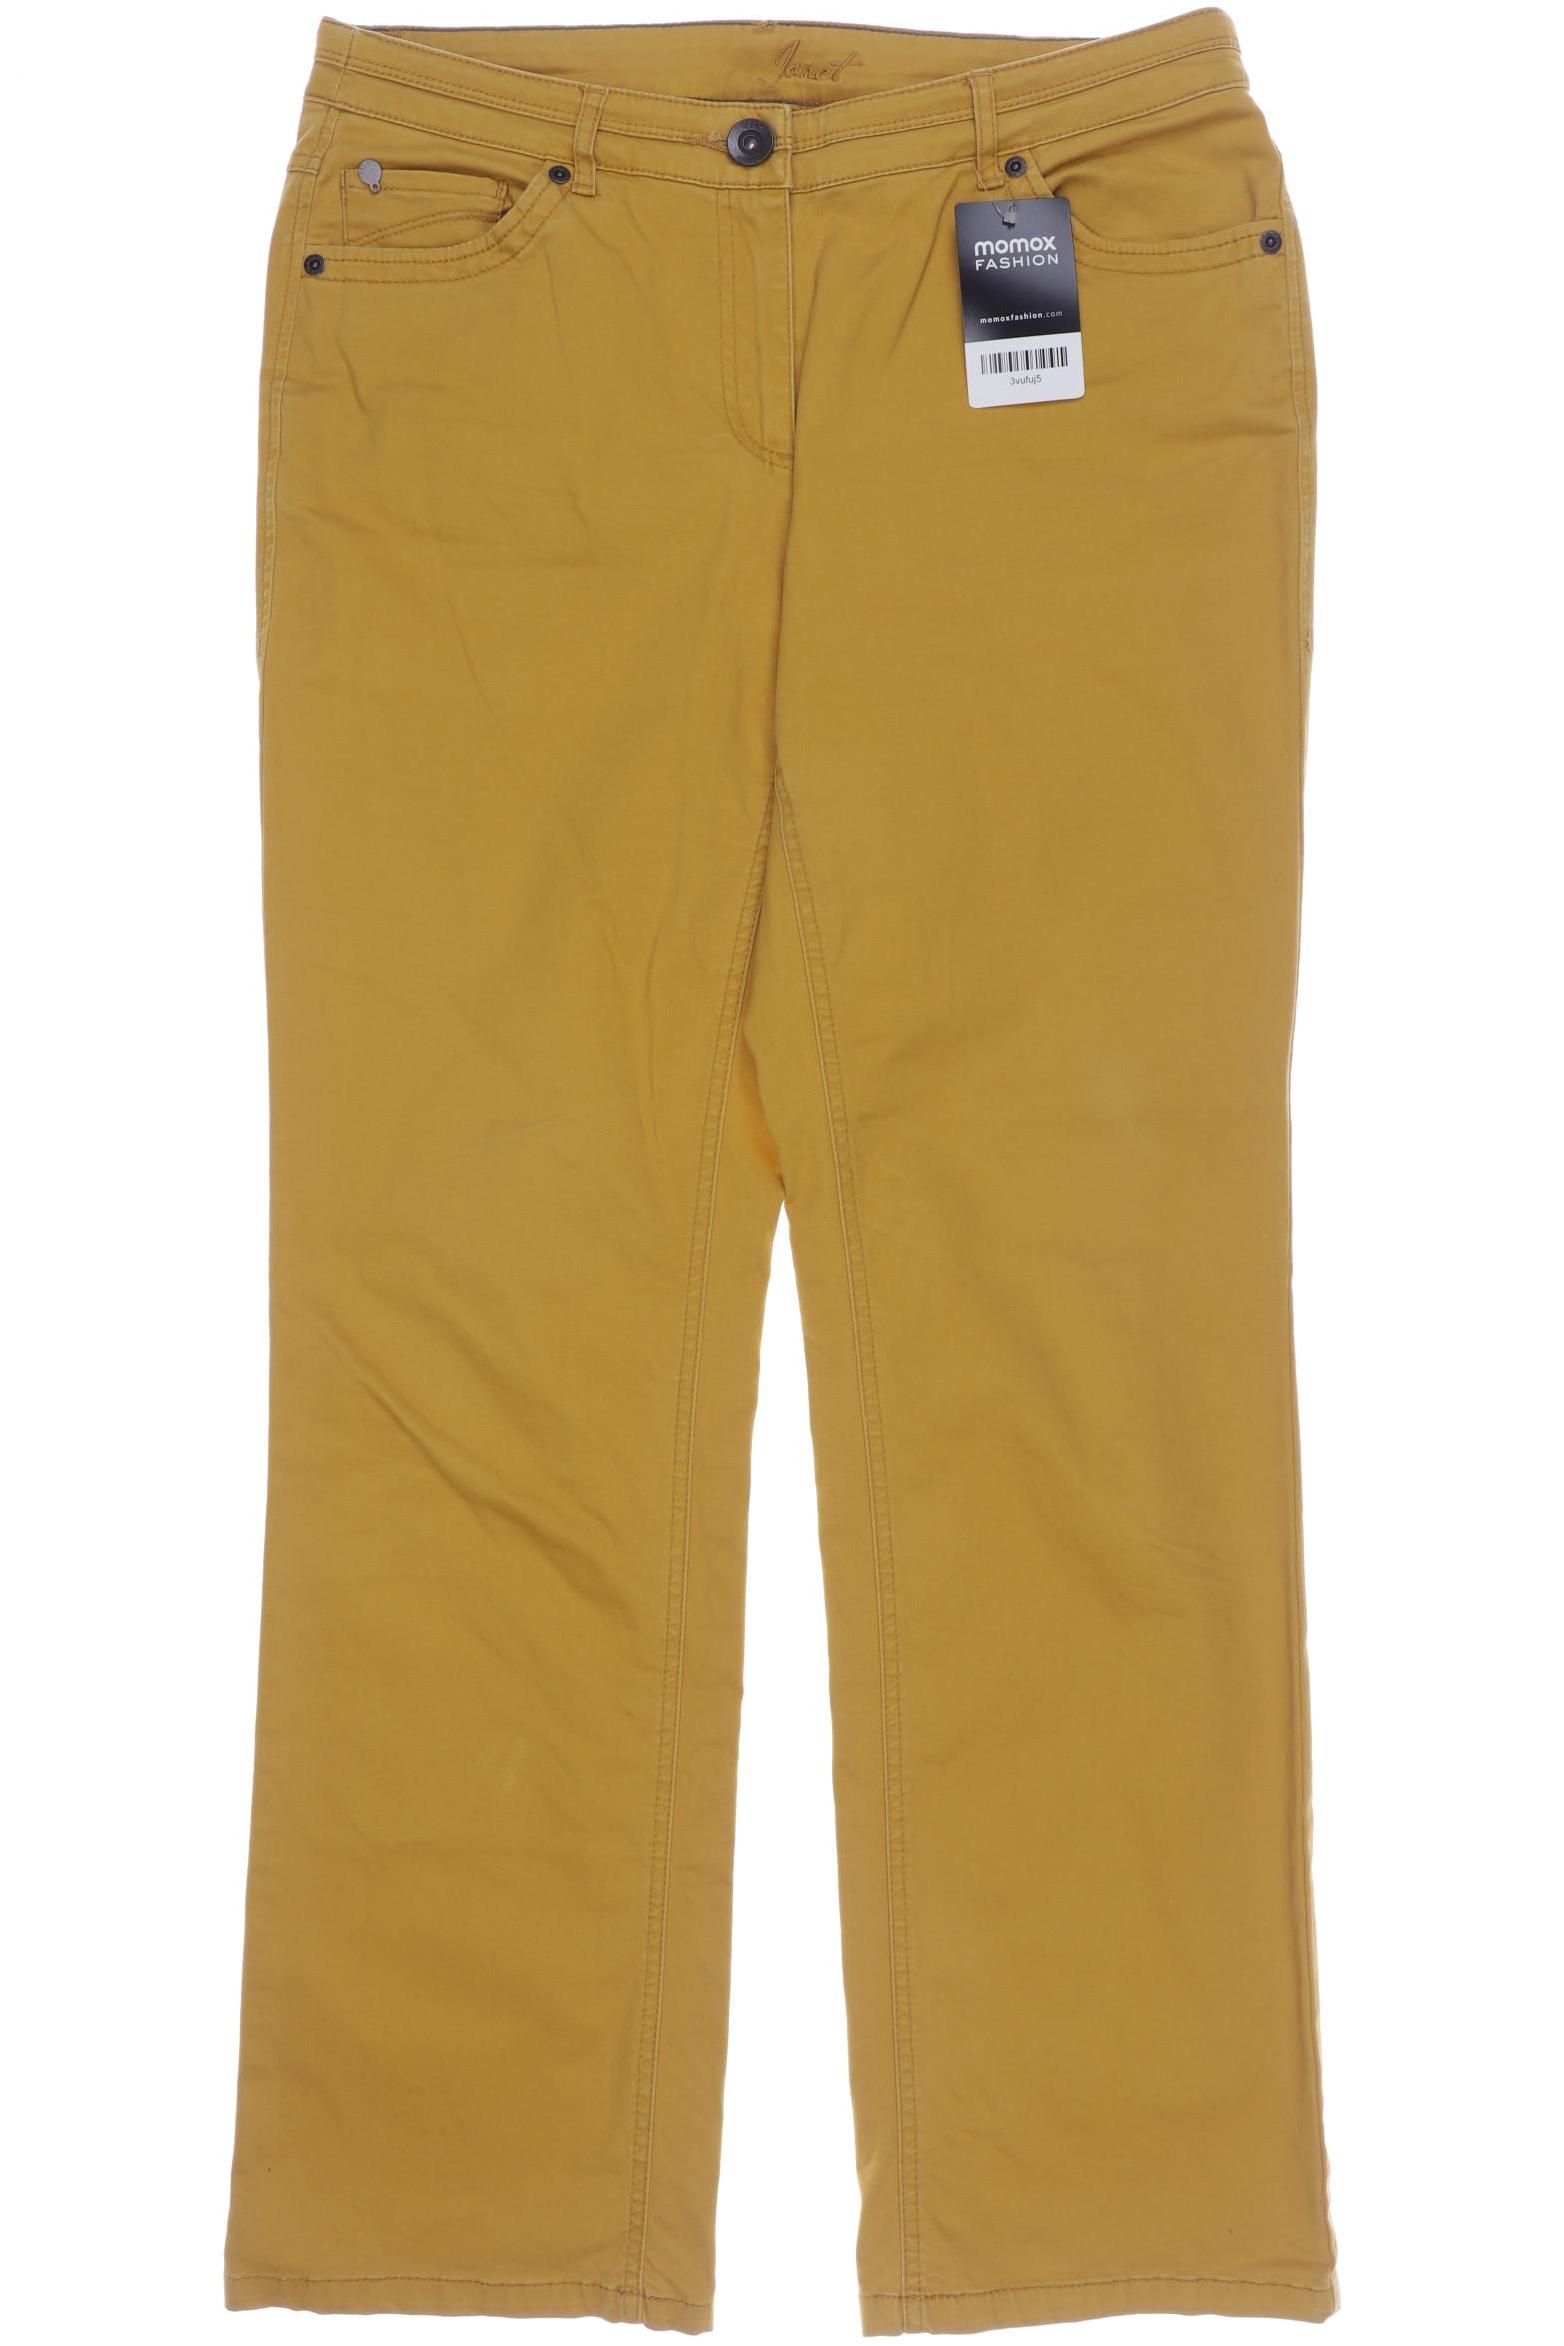 Cecil Damen Jeans, orange, Gr. 40 von cecil